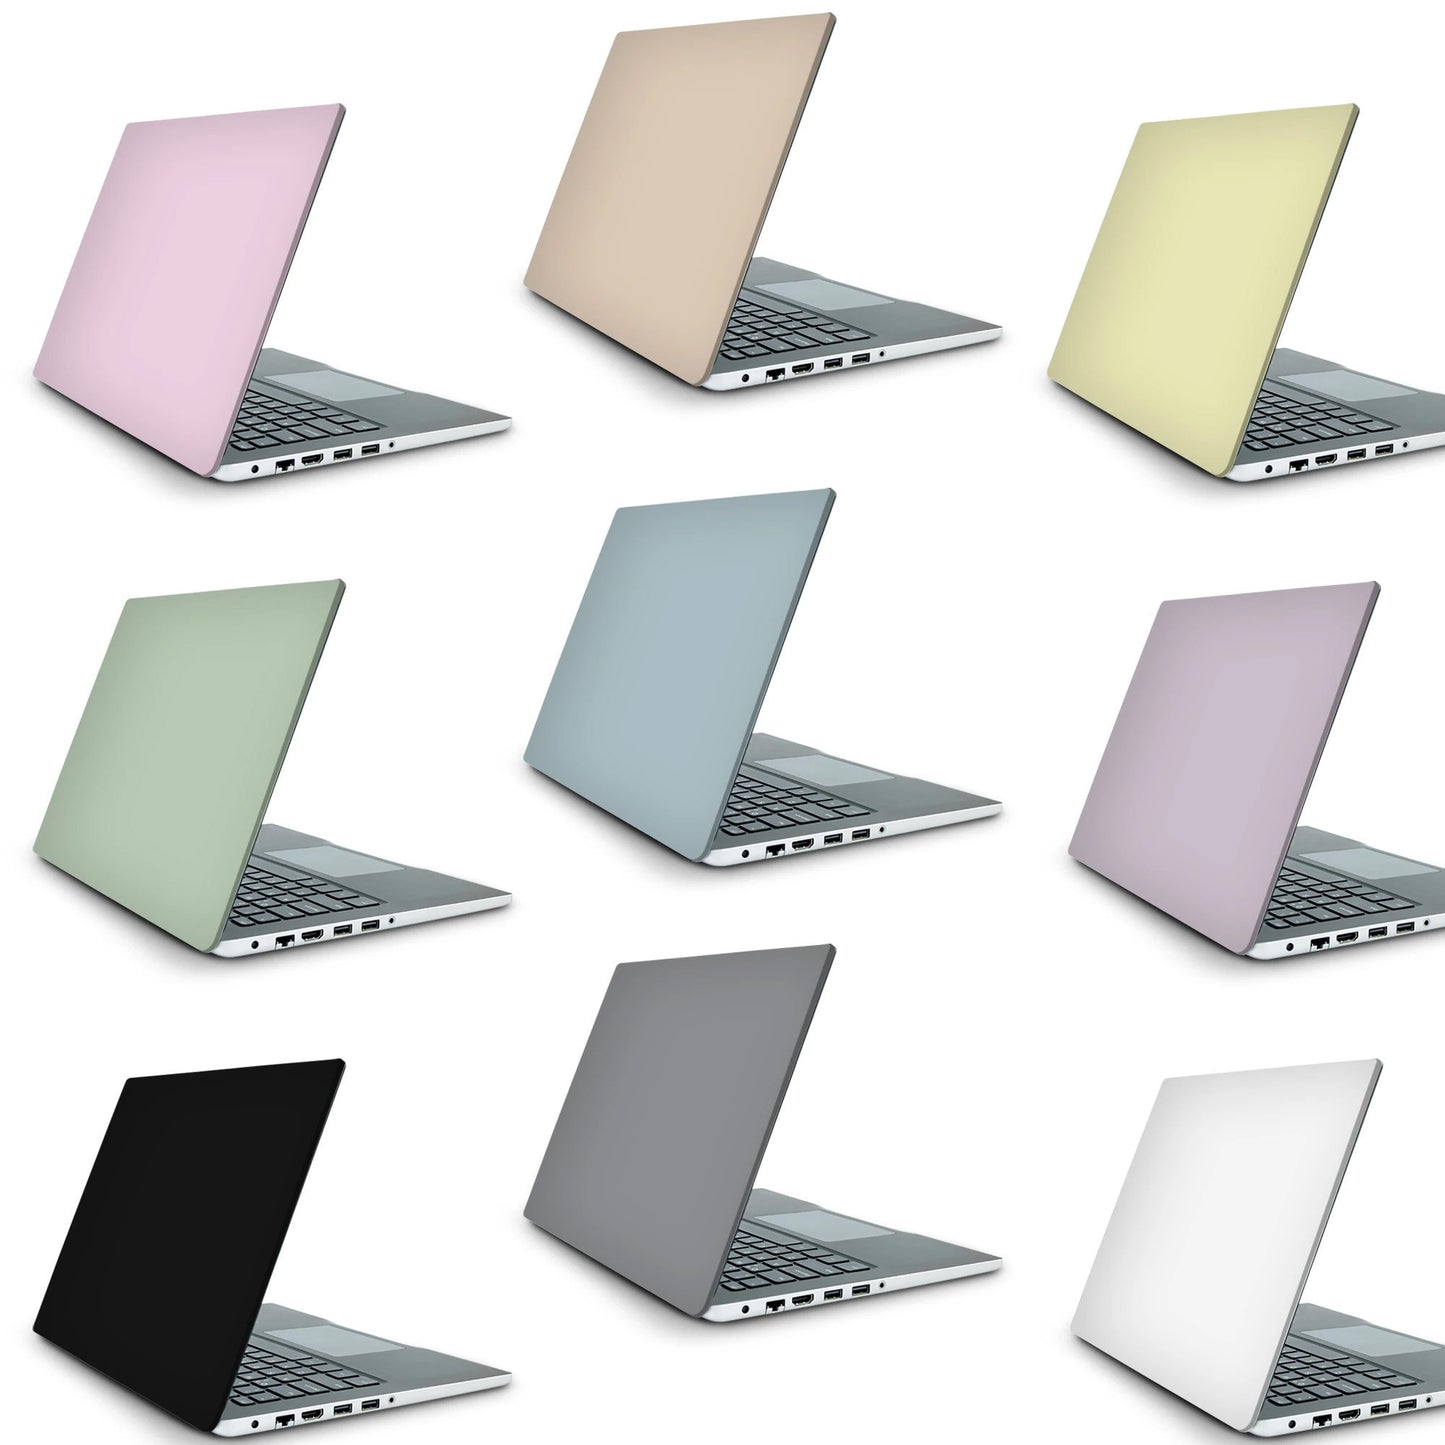 Black Gold Swirl Laptop Skin, Laptop Cover, Laptop Skins, Removable Laptop Skins, Laptop Decal, Customized Laptop Skin, Laptop Stickers 323